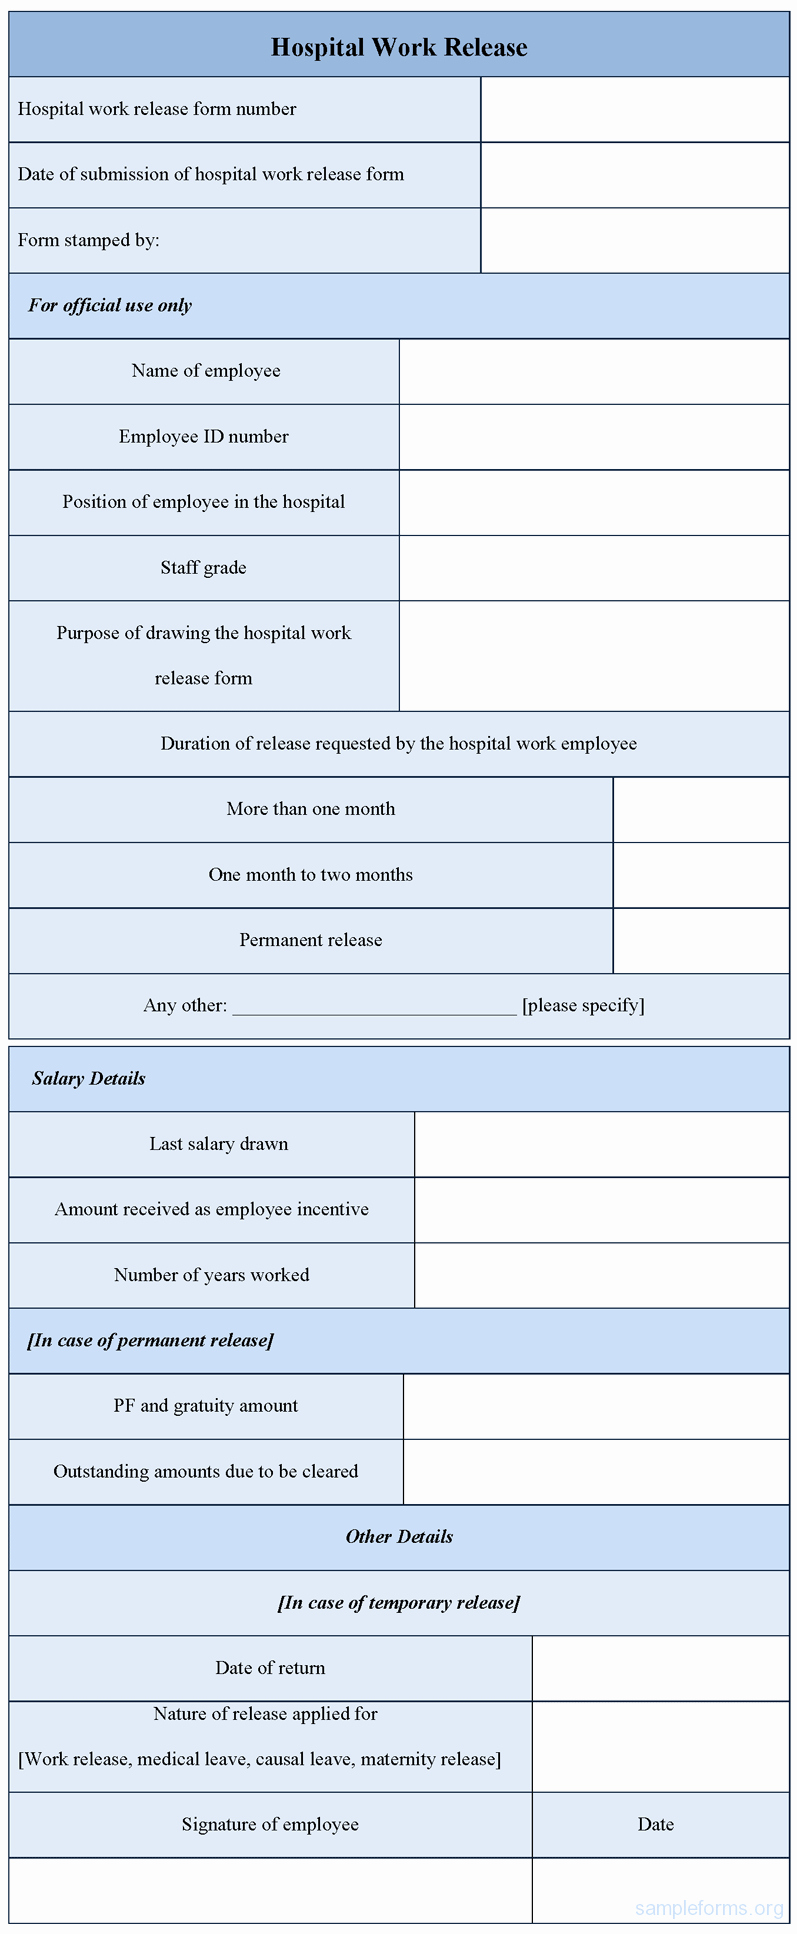 Hospital Release form Template Elegant Hospital Work Release form Sample forms